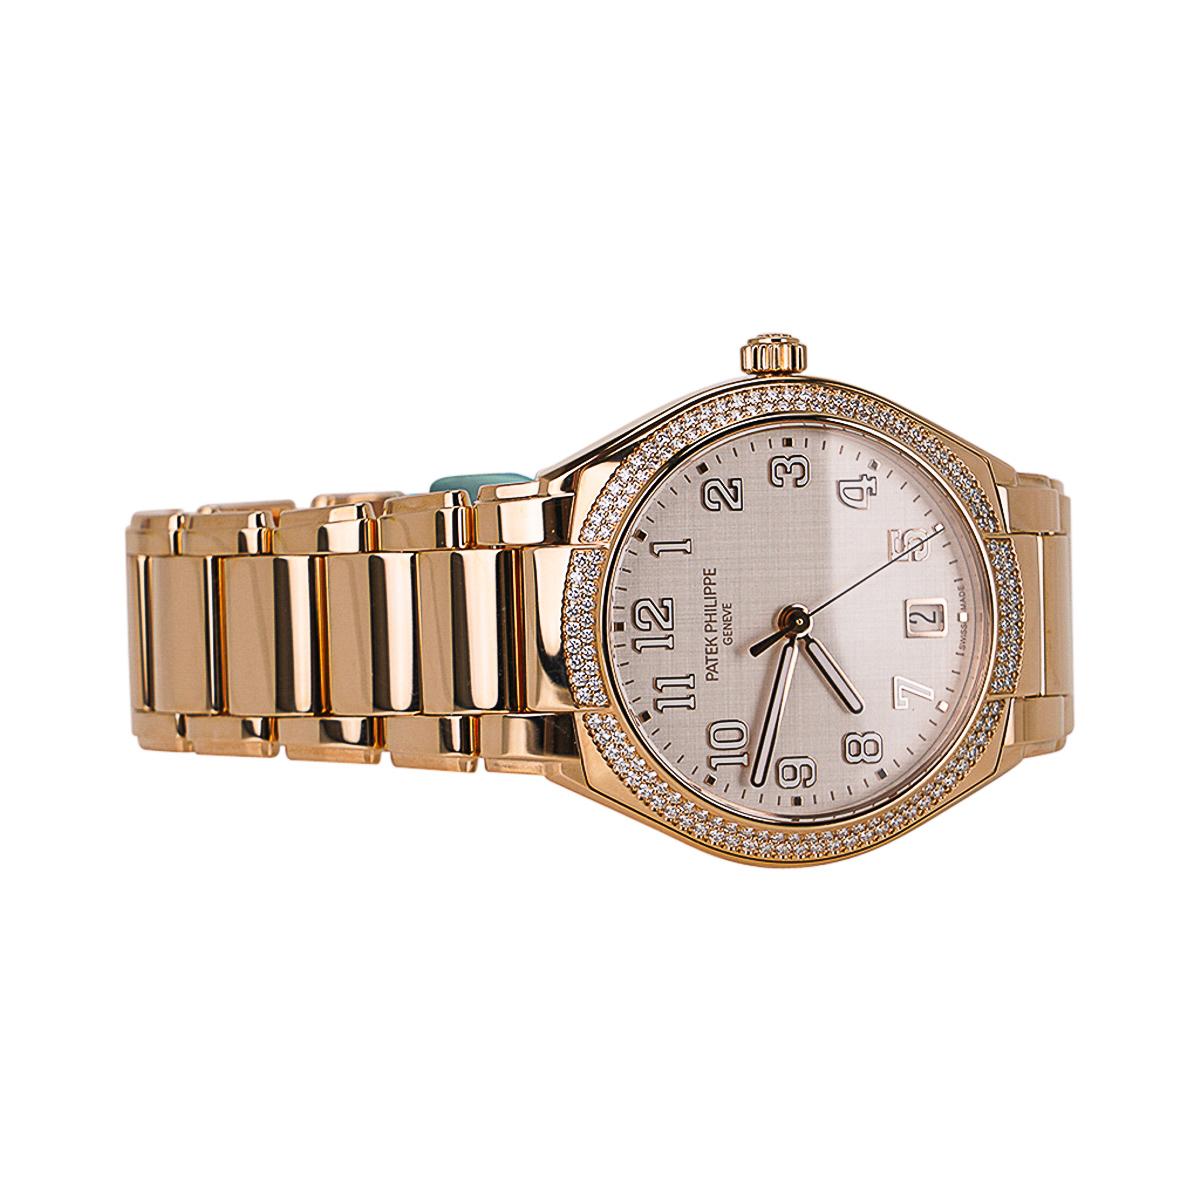 Une élégance intemporelle.
Mightychic propose une montre pour femme Patek Philippe 7300/1200R TWENTY~4 en or rose.
La première montre de la collection TWENTY~4 à présenter un boîtier rond.
Lunette en 160 diamants - 0,77ct.
Cadran argenté avec